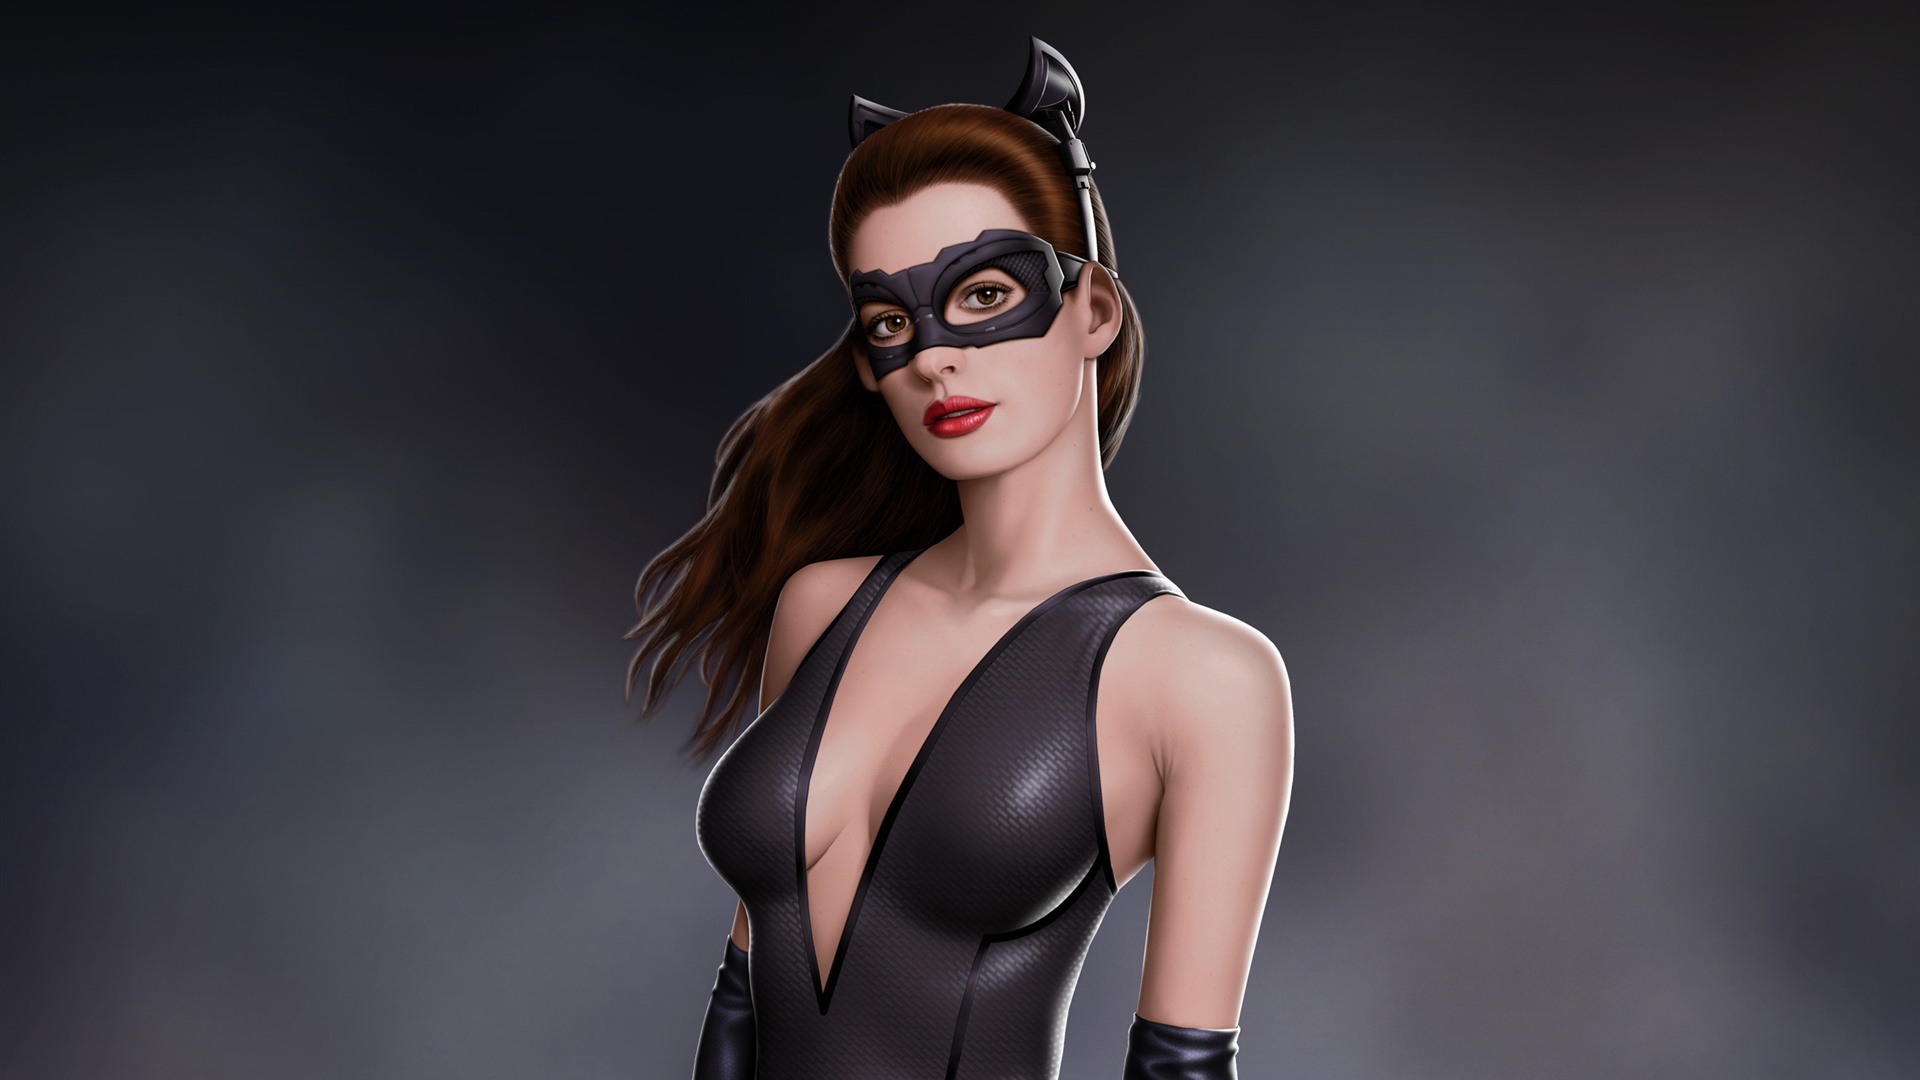 Anne Hathaway In Batman Movie As Catwoman Wallpaper Desktop